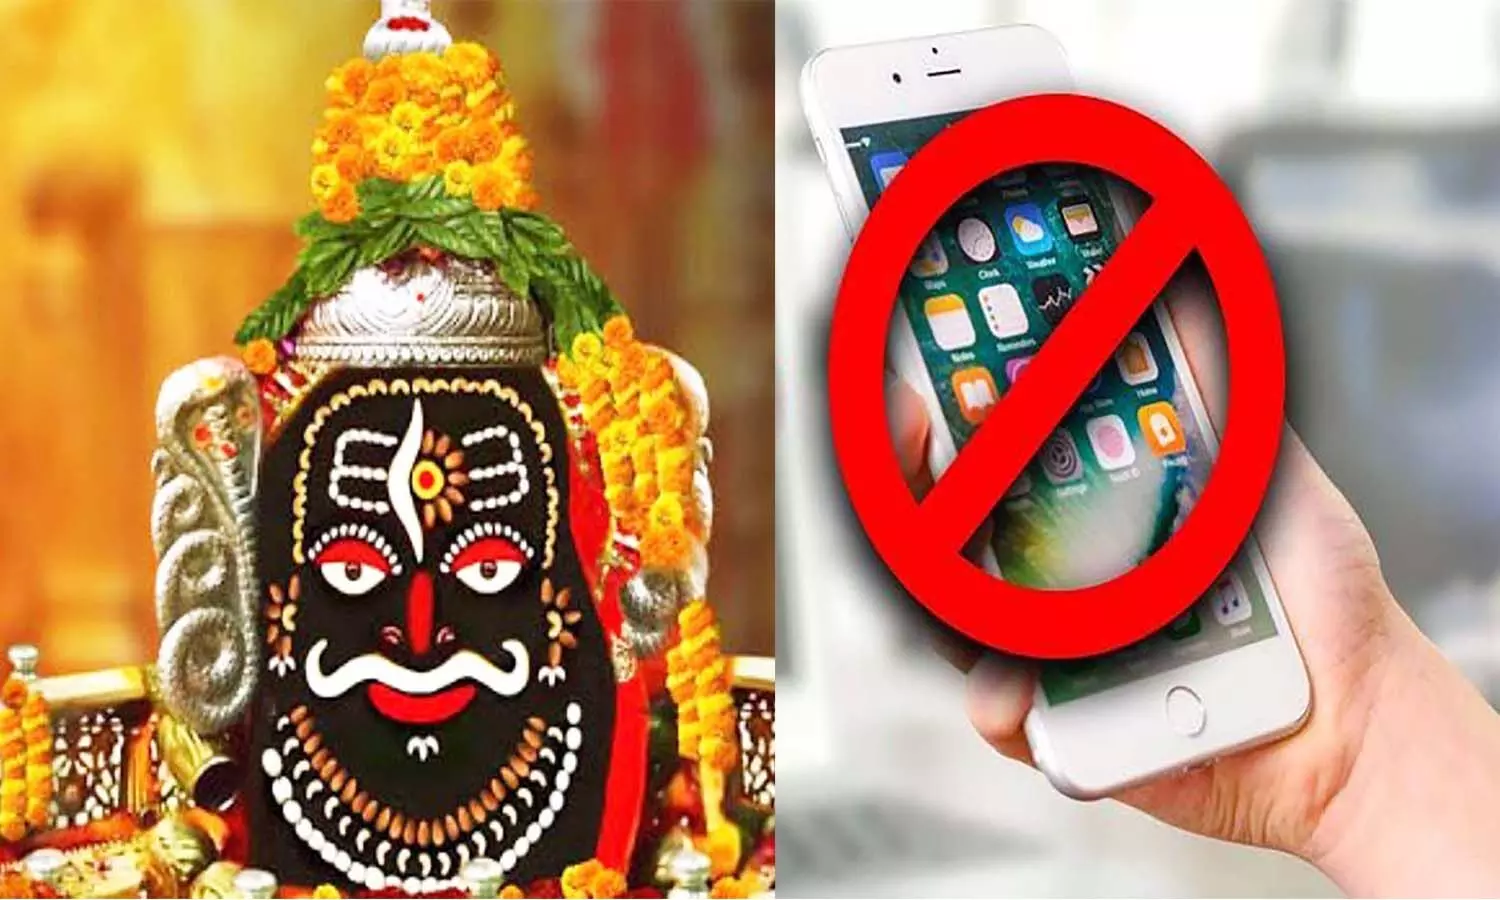 एमपी के उज्जैन महाकाल मंदिर परिसर में नहीं ले जा सकेंगे मोबाइल, लगेगा बैन |  Ujjain of MP will not be able to take mobile in Mahakal temple premises,  will be banned